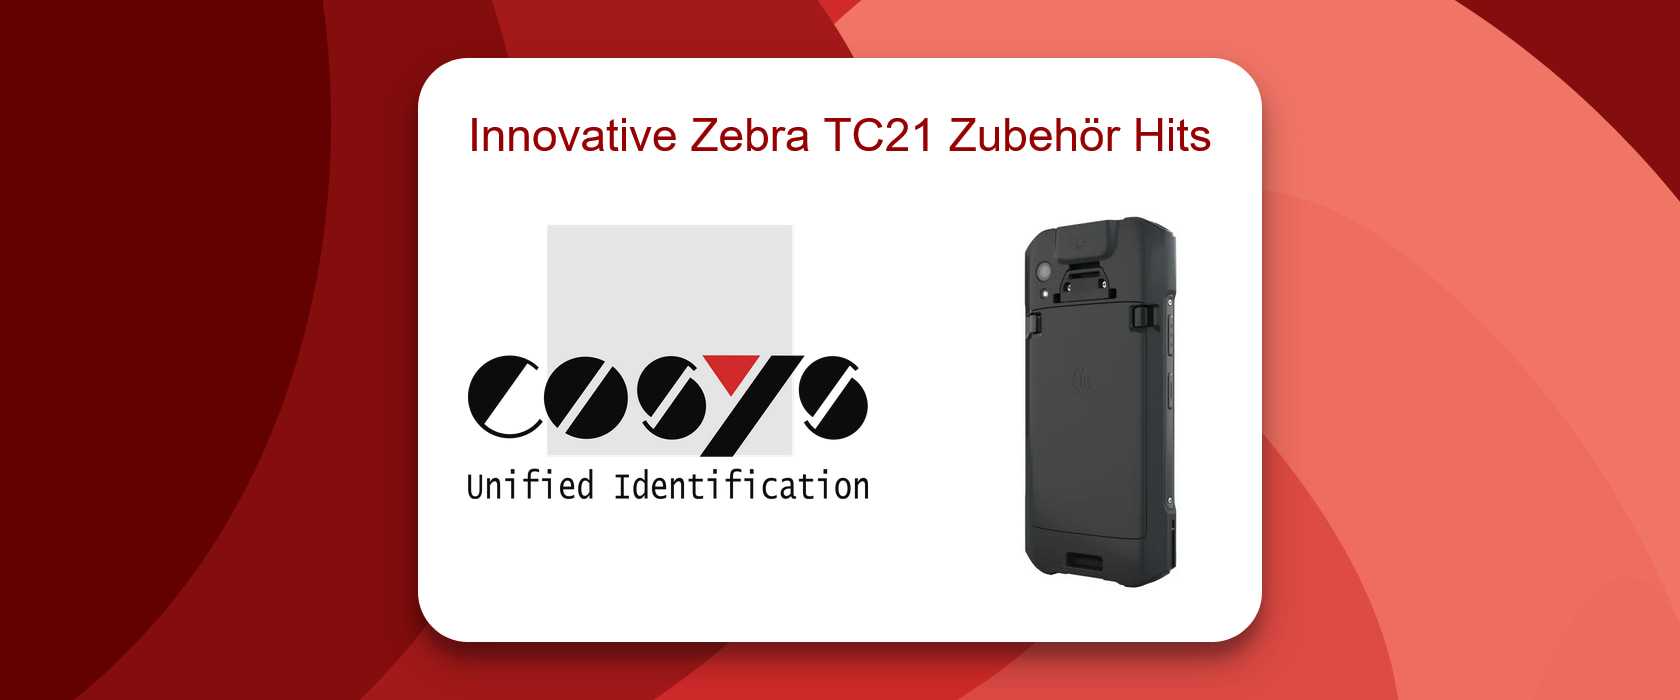 Innovation im Zubehör für Zebra TC21